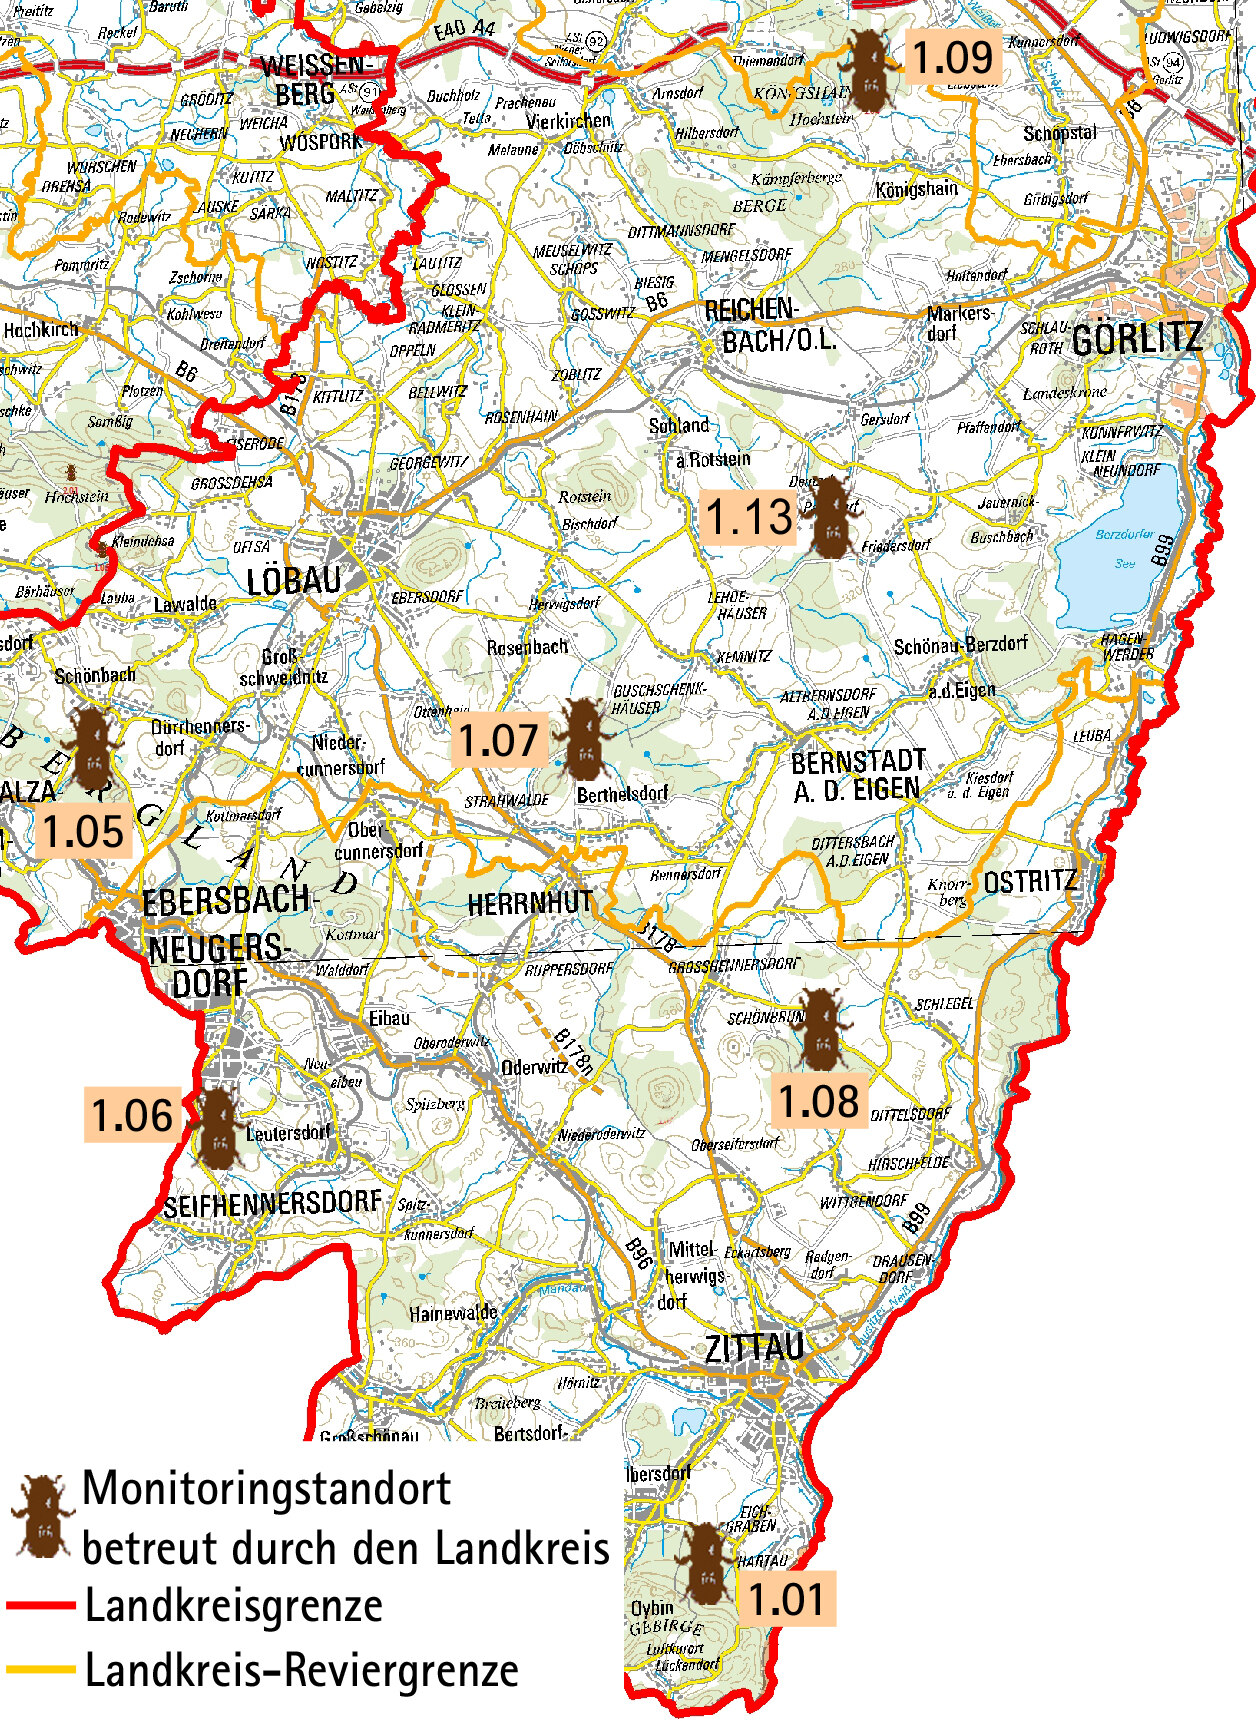 Fallenstandorte für Fichtenborkenkäfer im Landkreis Görlitz